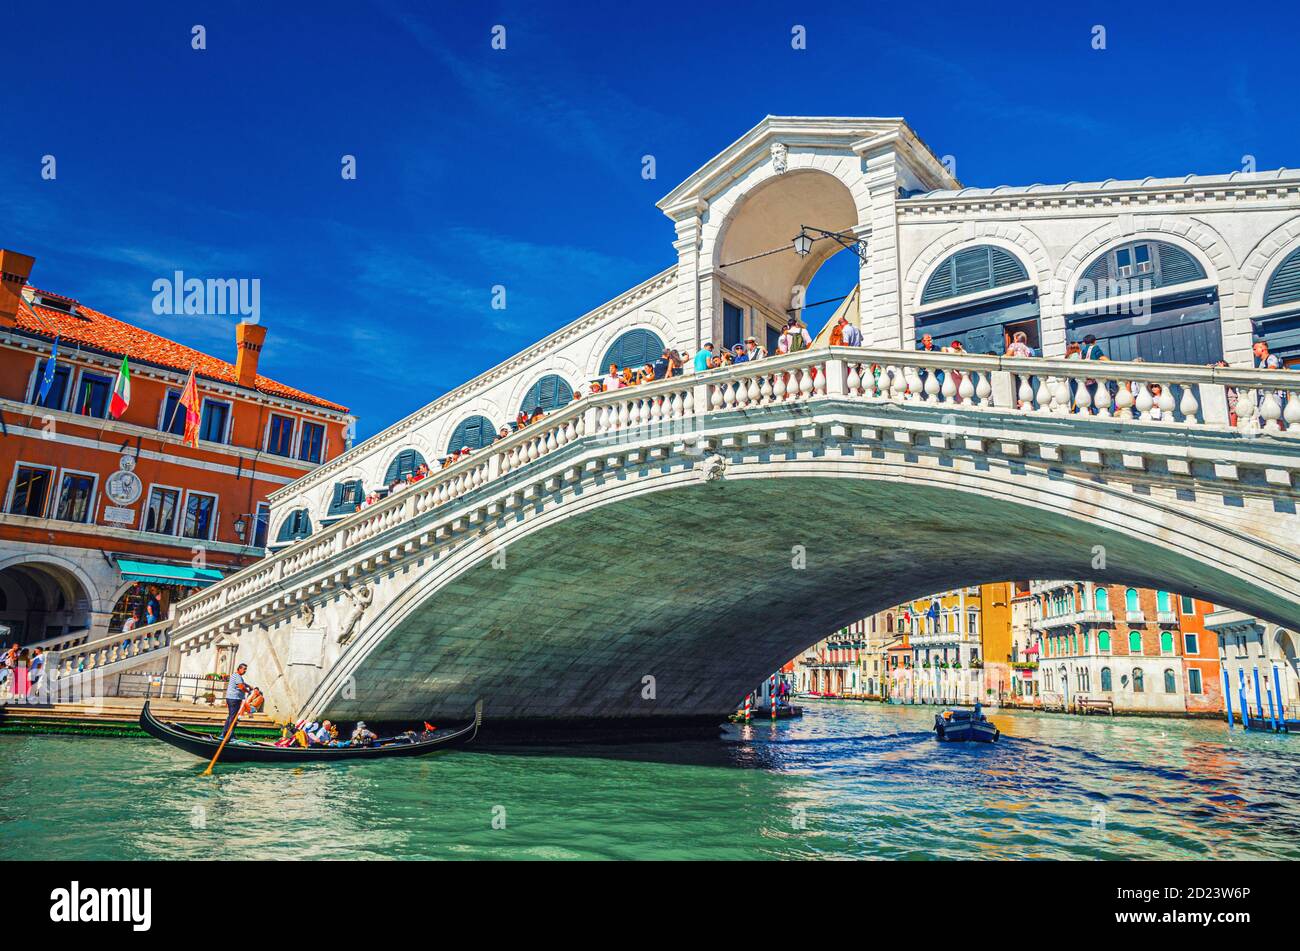 Venezia, Italia, 13 settembre 2019: Gondoliere in gondola tradizionale barca a vela sulle acque del Canal Grande sotto il Ponte di Rialto, tipici edifici colorati e cielo blu chiaro sfondo Foto Stock